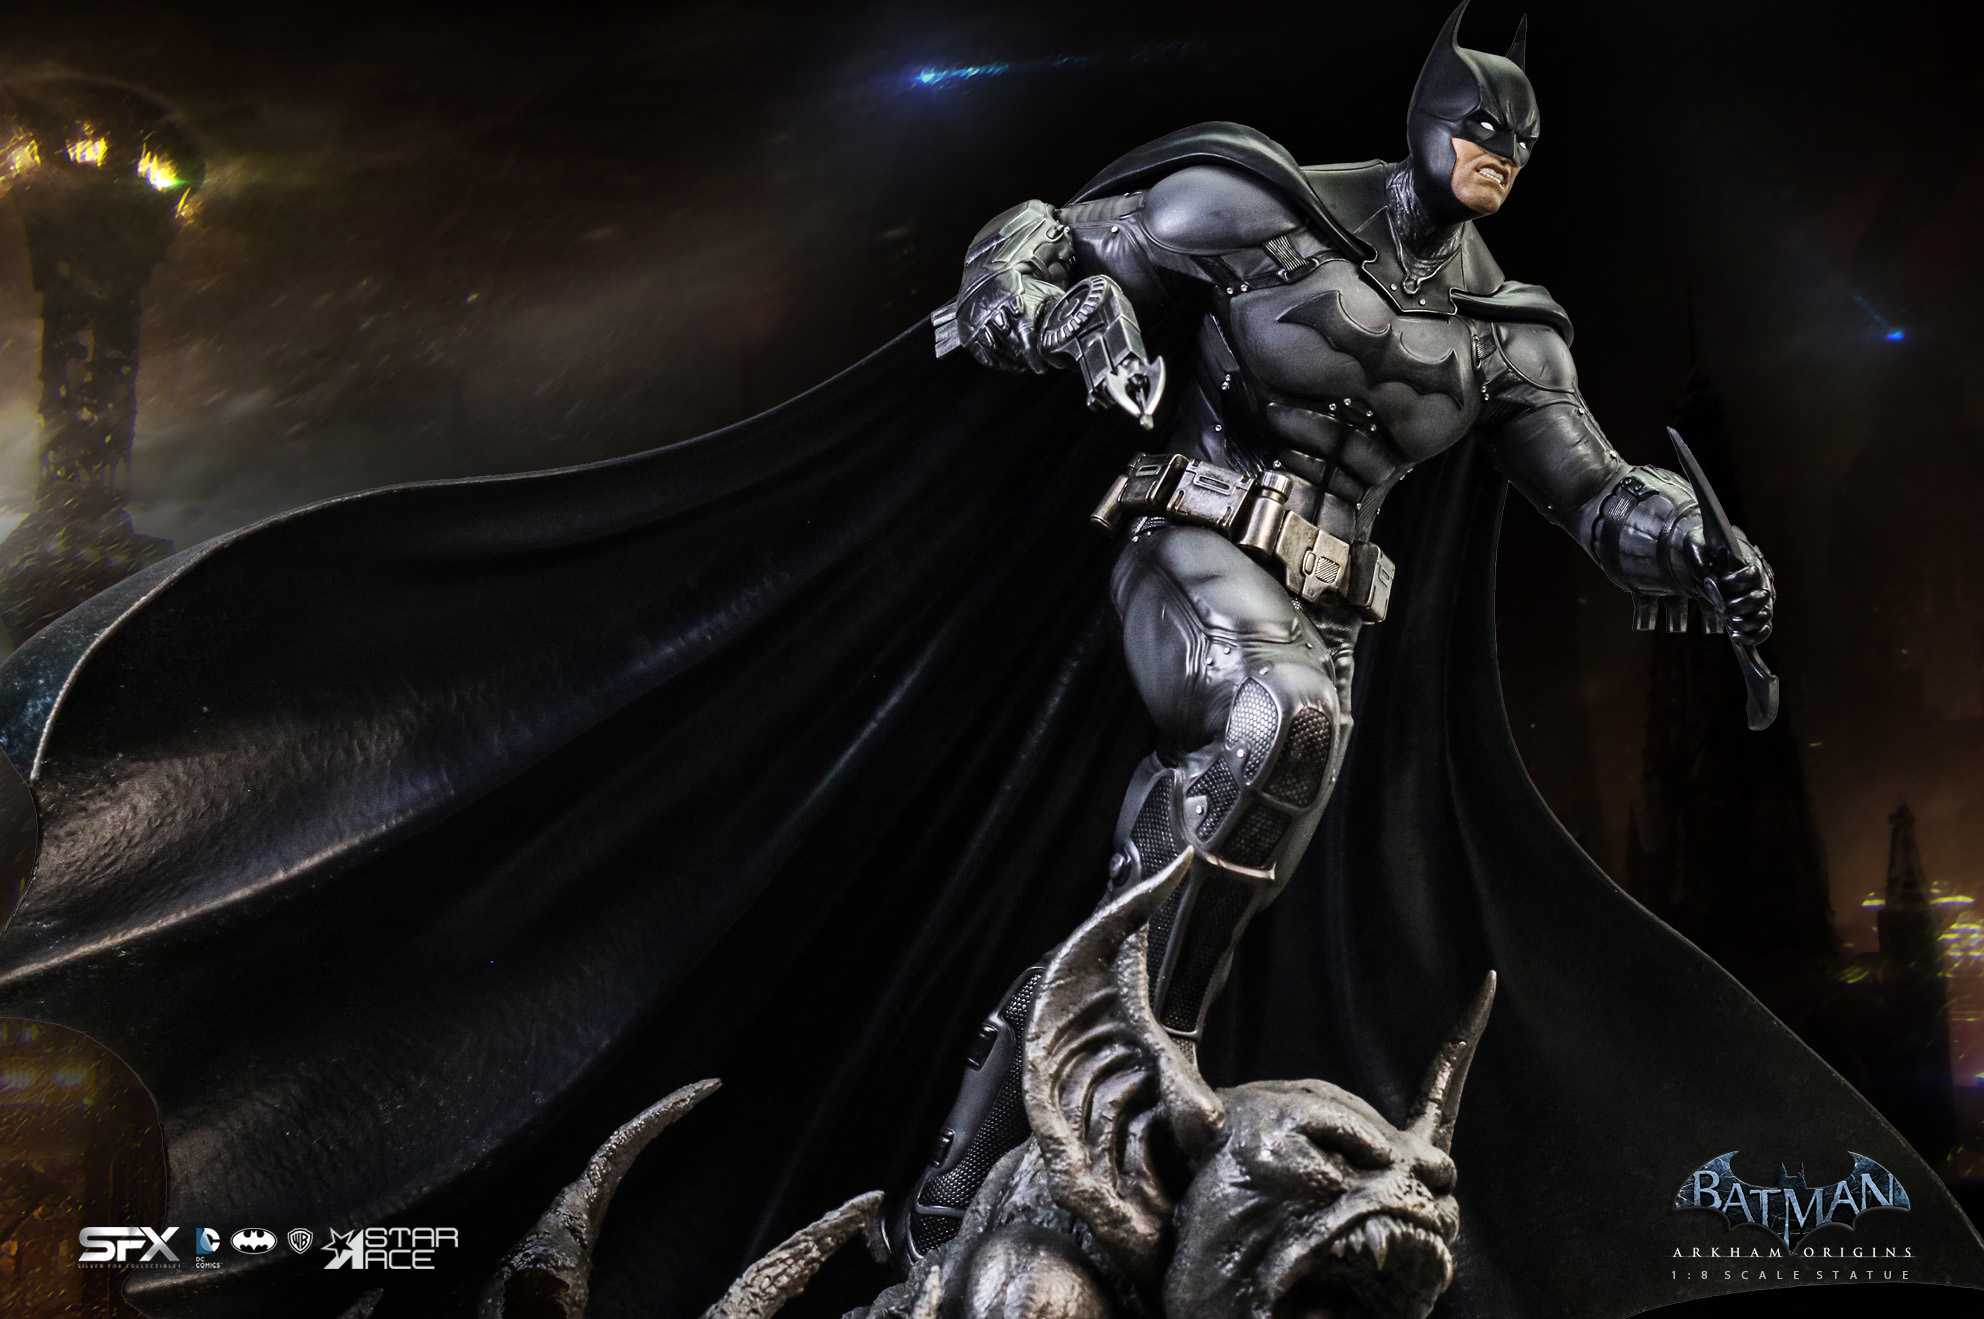 Batman Arkham Origins Exclusive Edition (Prototype Shown) View 5